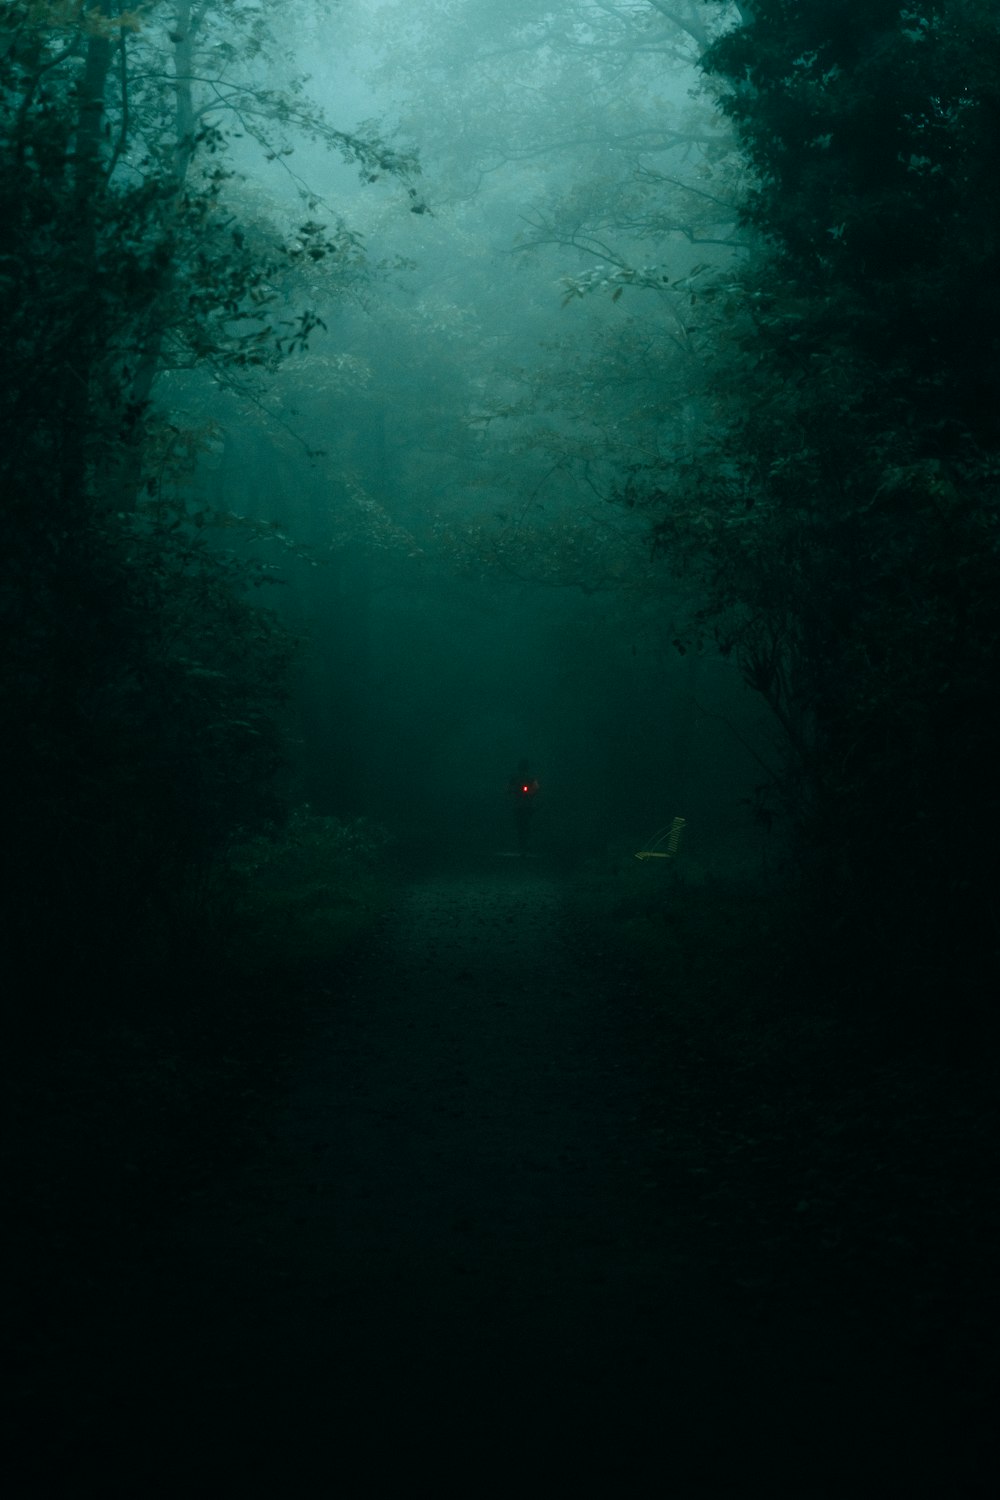 Una persona parada en medio de un bosque oscuro